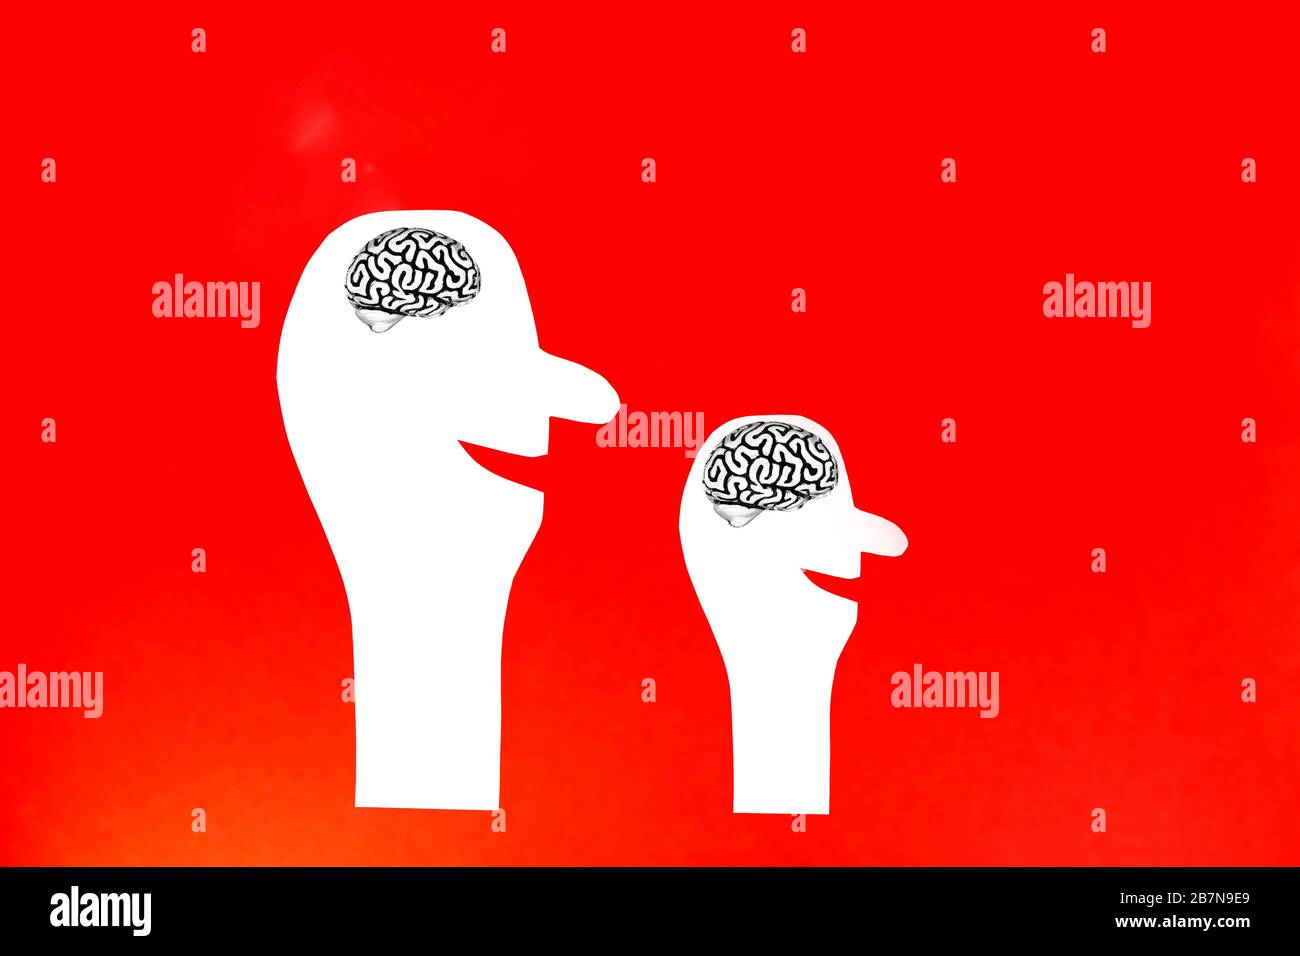 Deux silhouettes d'une personne souriante découpés de papier blanc avec un modèle métallique d'un cerveau humain à l'intérieur de leur tête sur un fond rouge. Banque D'Images